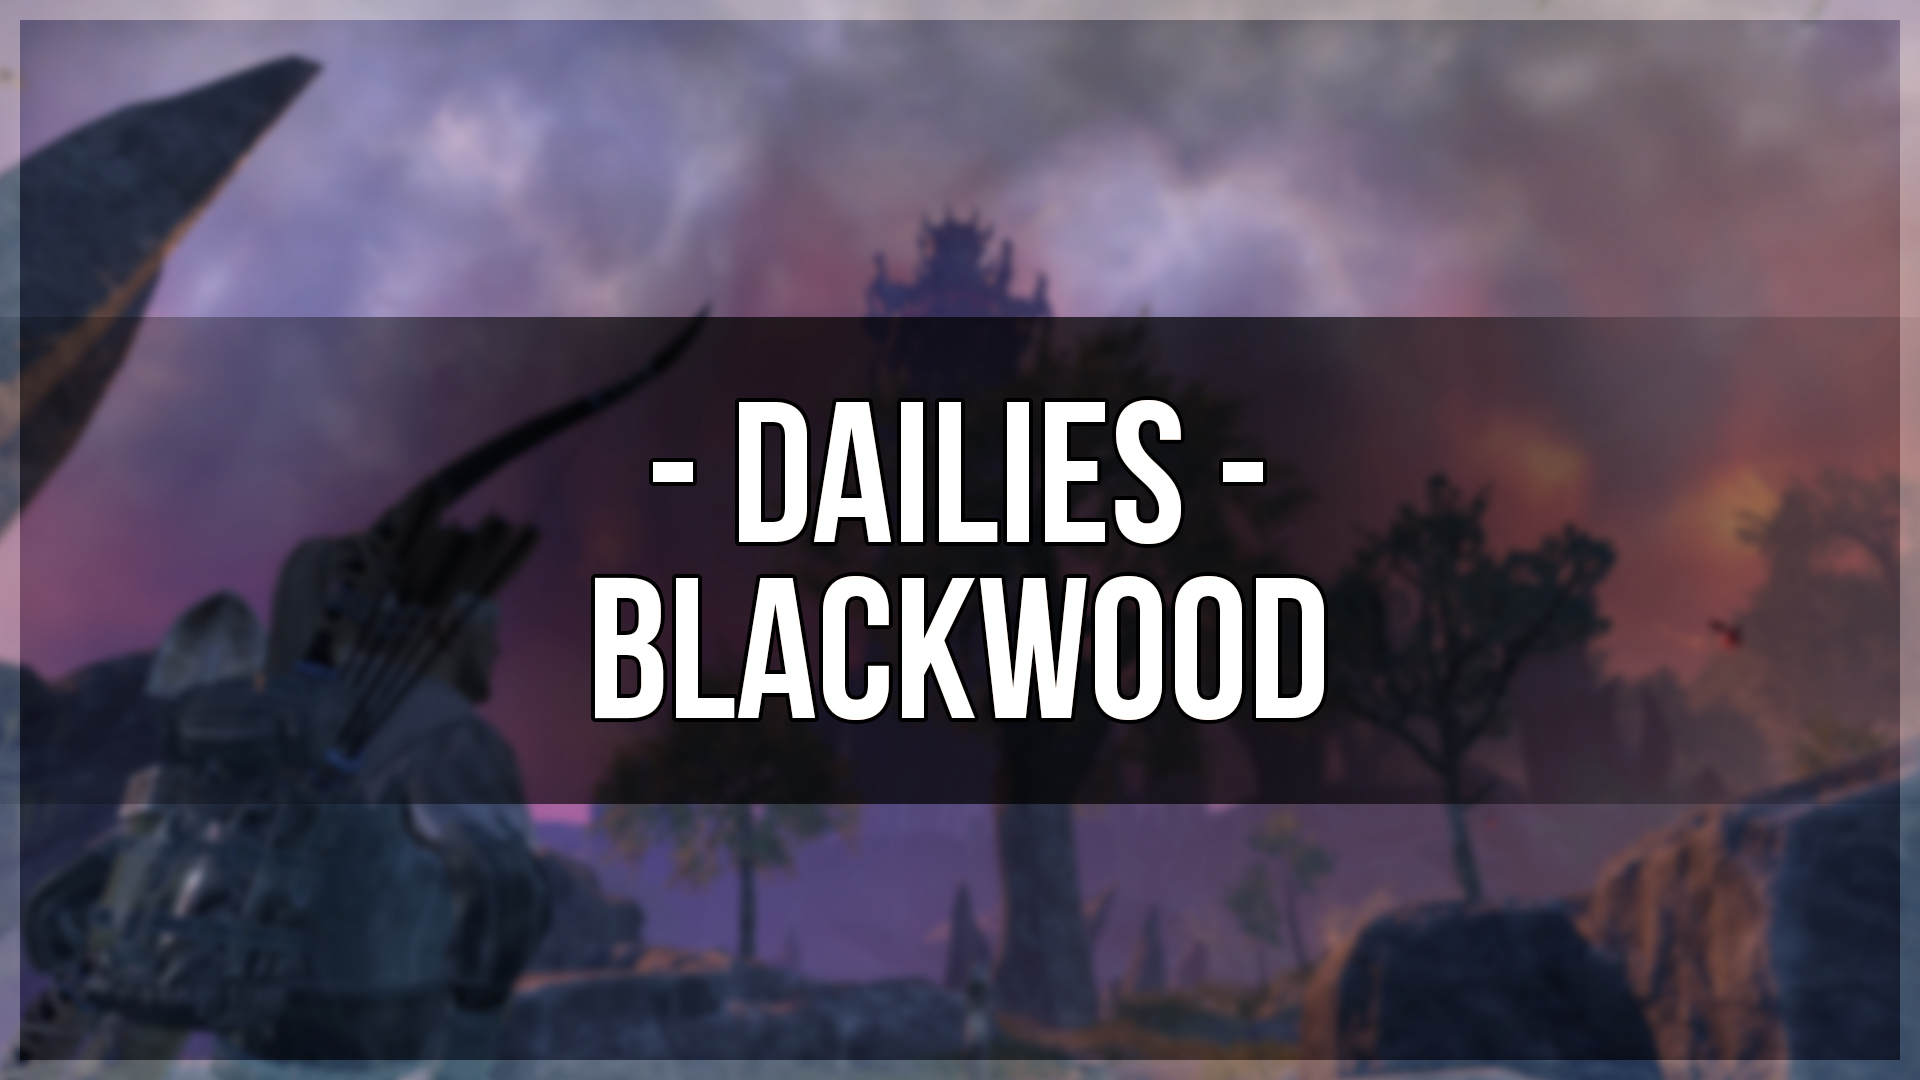 Blackwood Dailies